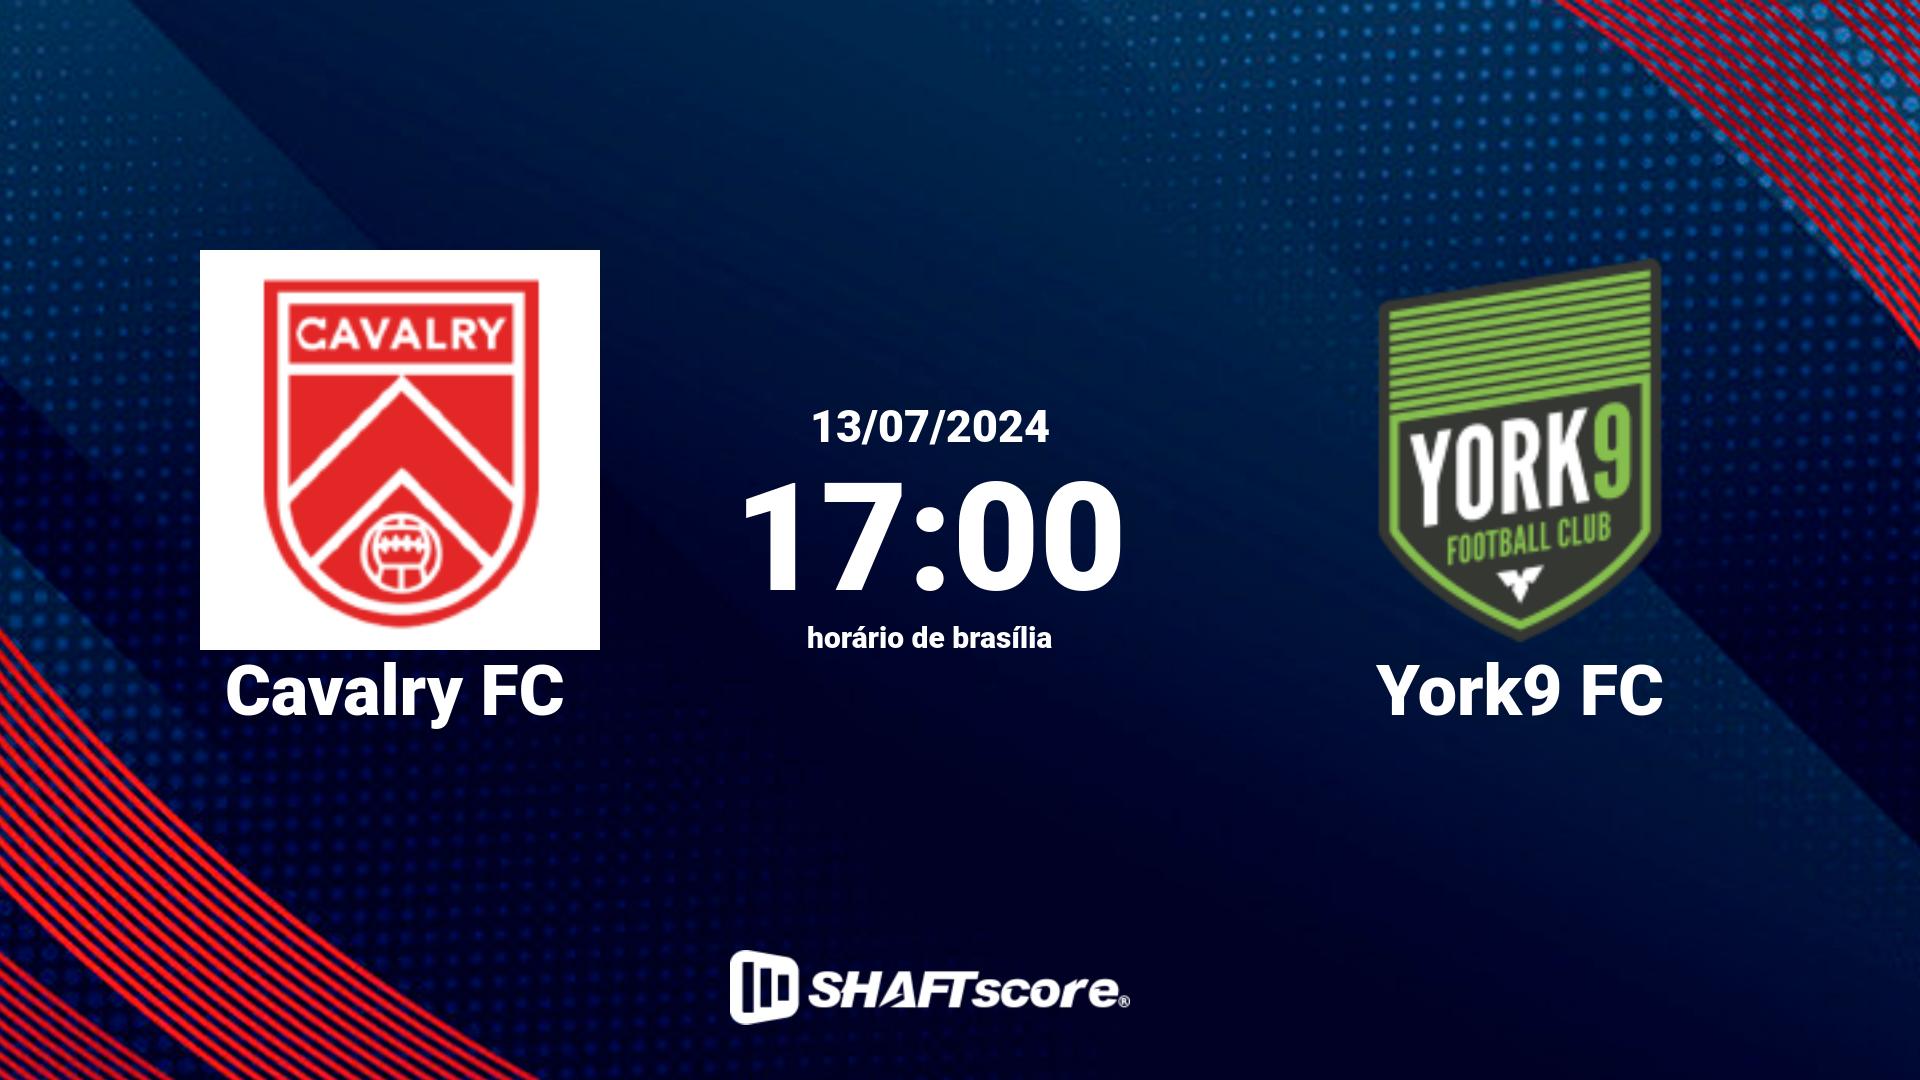 Estatísticas do jogo Cavalry FC vs York9 FC 13.07 17:00